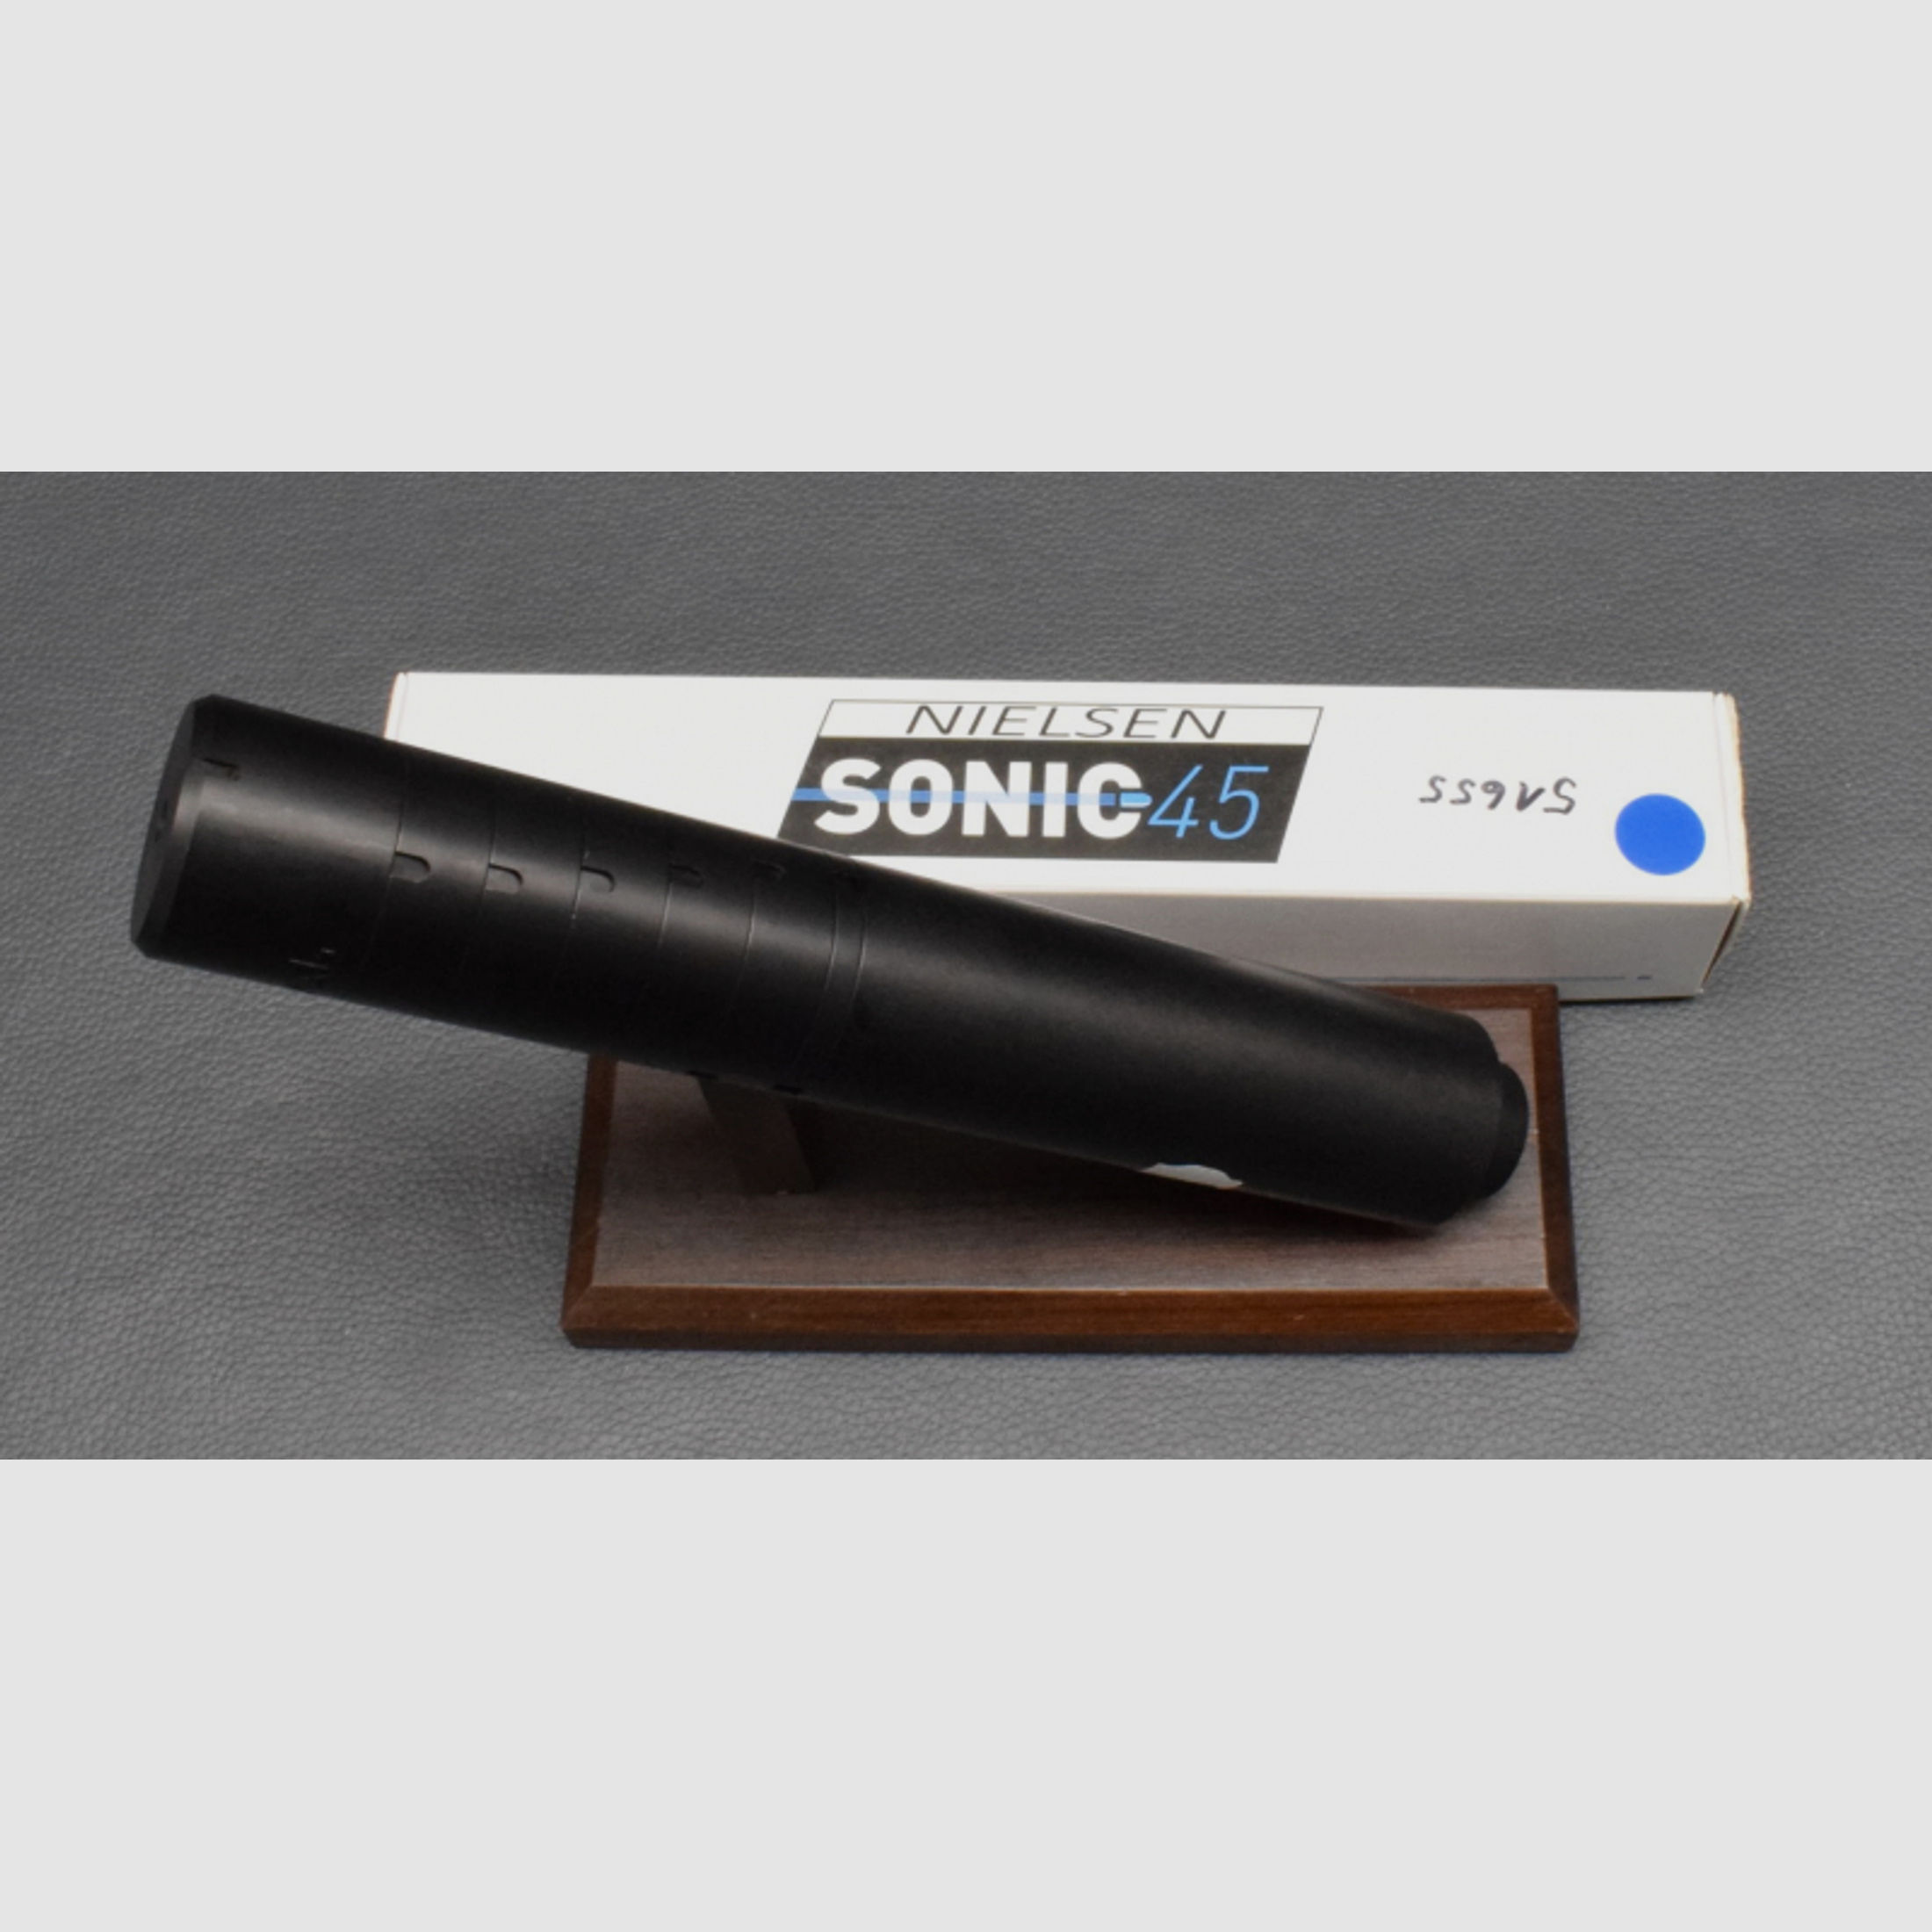 Nielsen Sonic 45 Schalldämpfer, Silencer, Kal. 6mm, Neuware aus Geschäftsauflösung